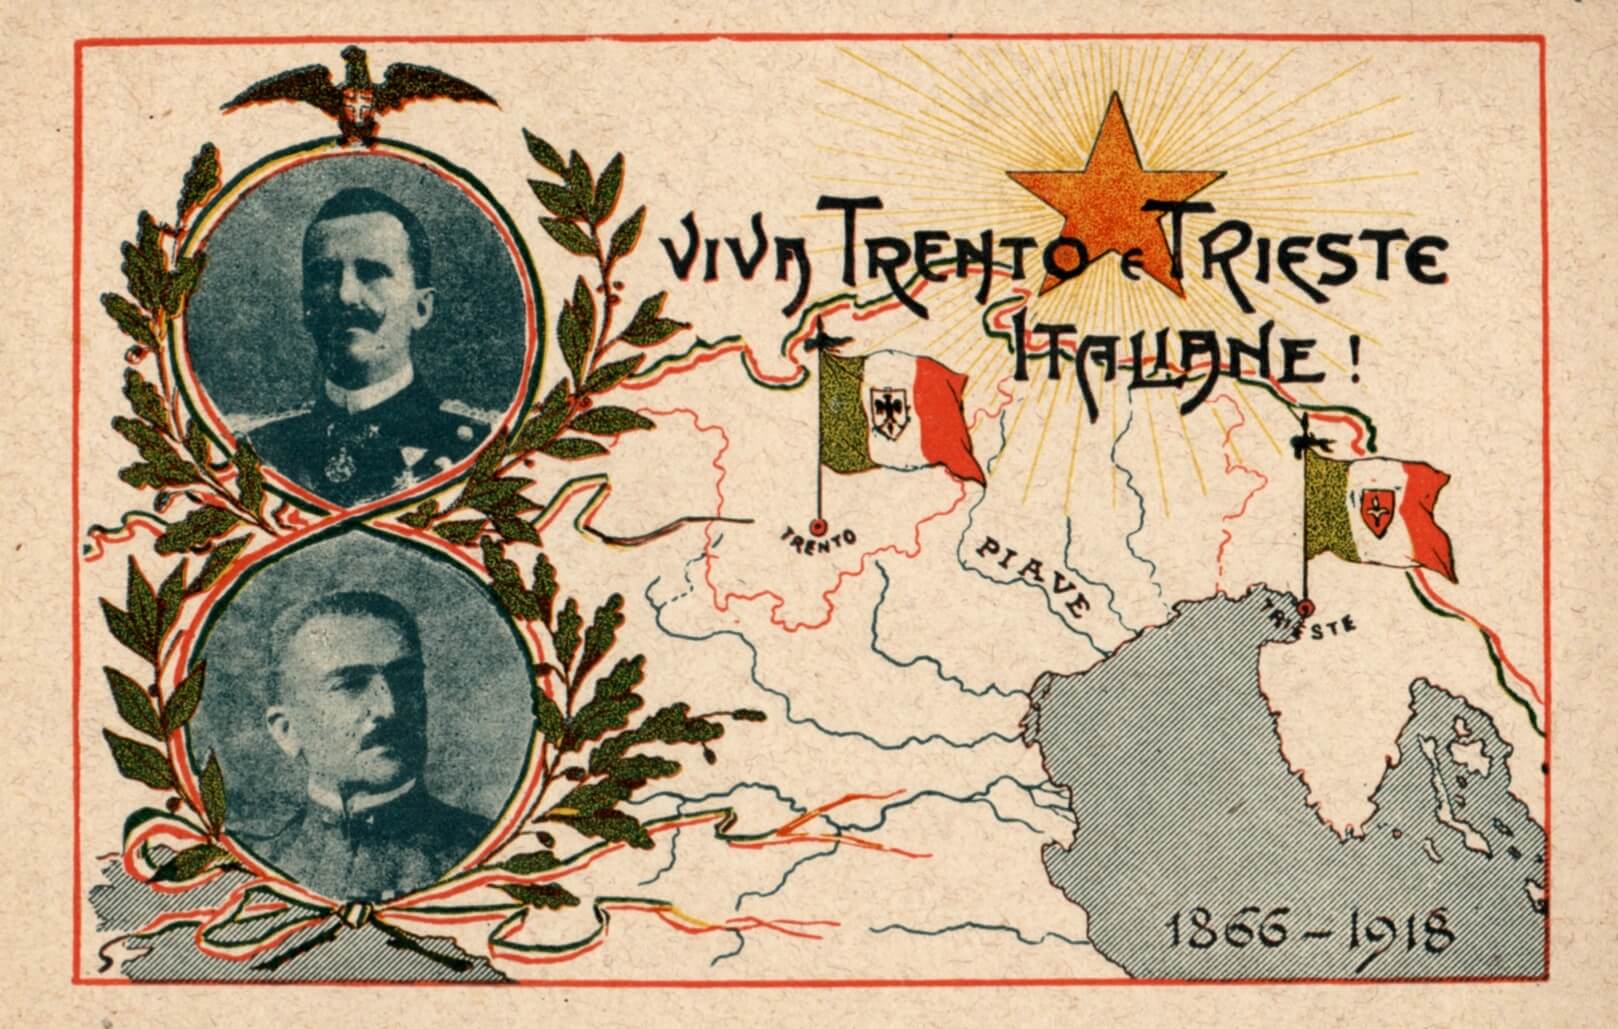 Cartolina di propaganda italiana del 1918: Commemorazione della Vittoria “Viva Trento e Trieste Italiane!”